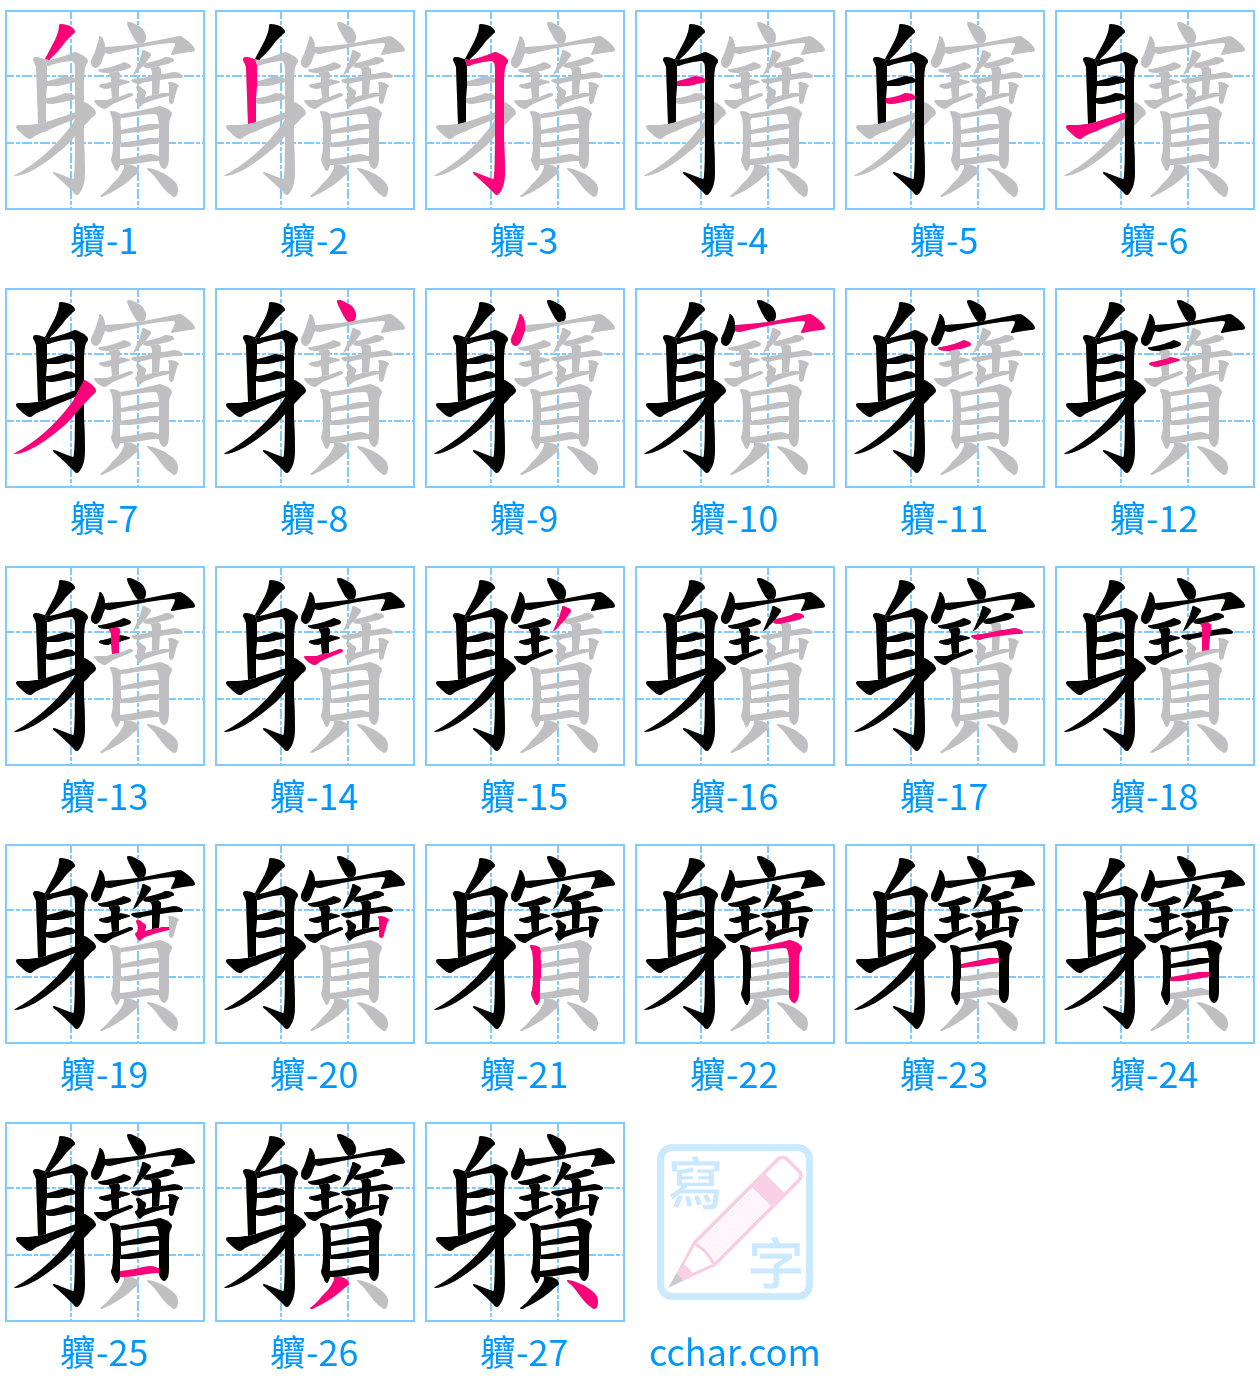 軉 stroke order step-by-step diagram